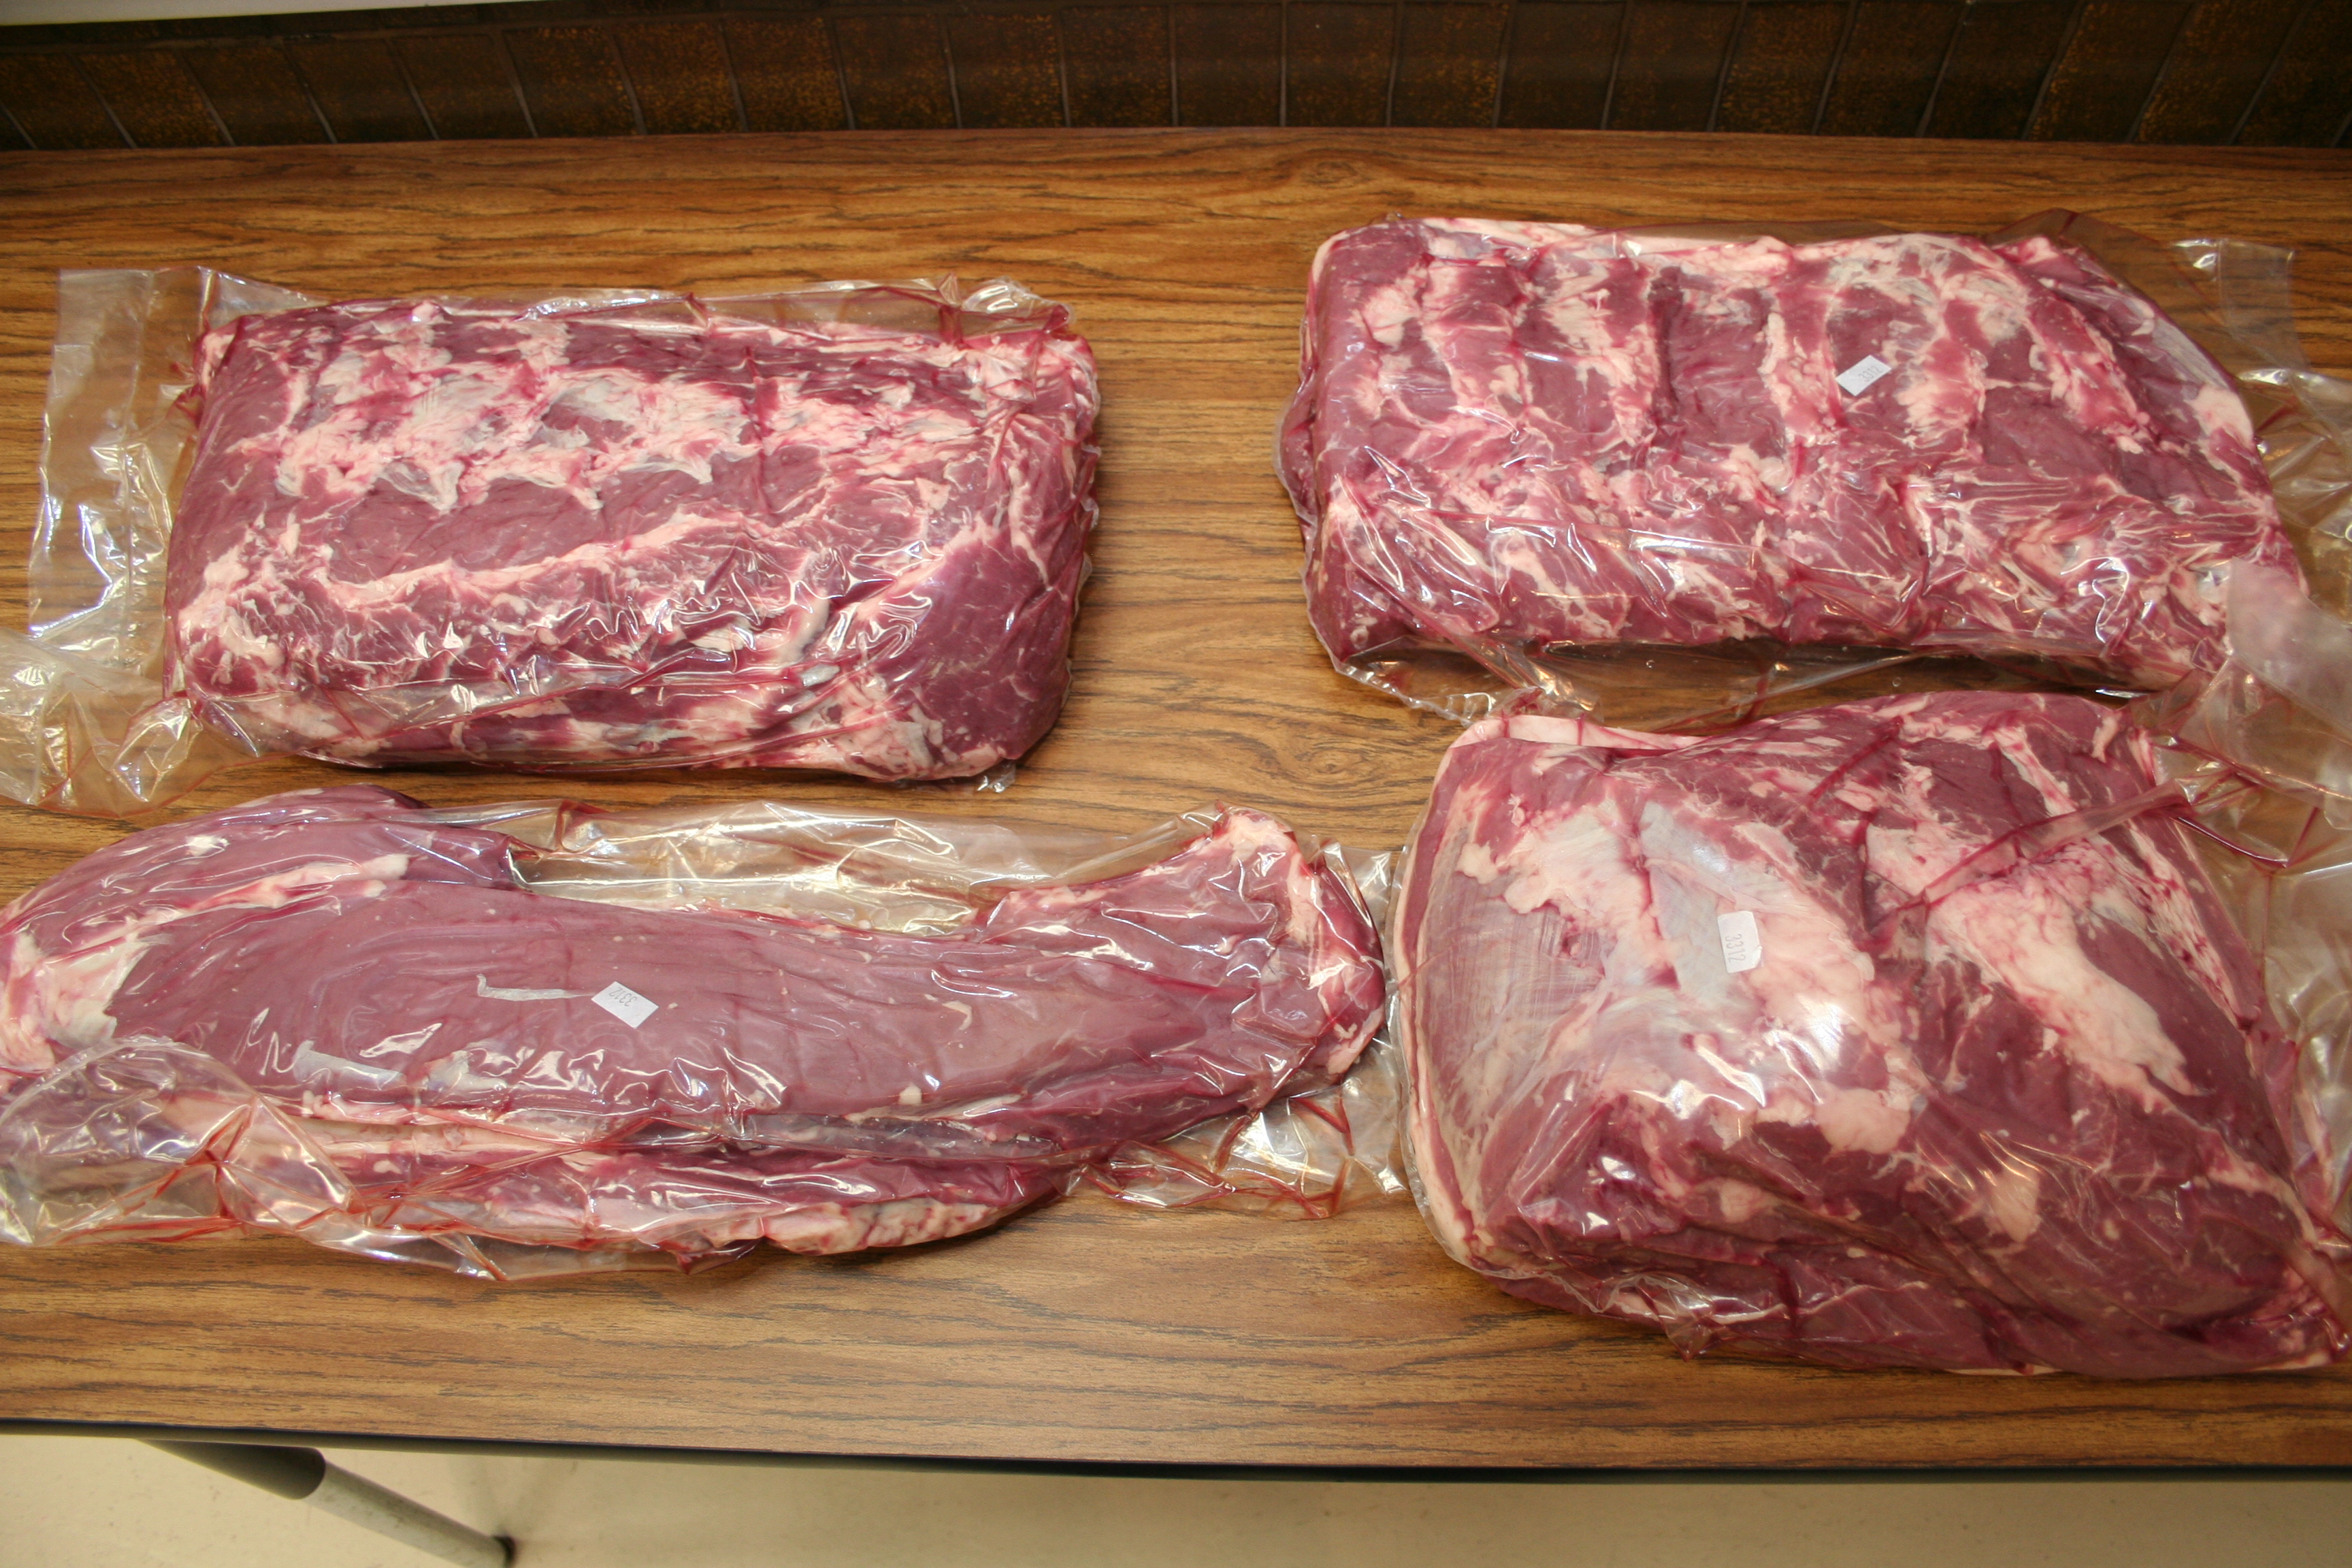 The middle meats — ribeye roll, lip-on; tenderloin; strip loin; top sirloin butt